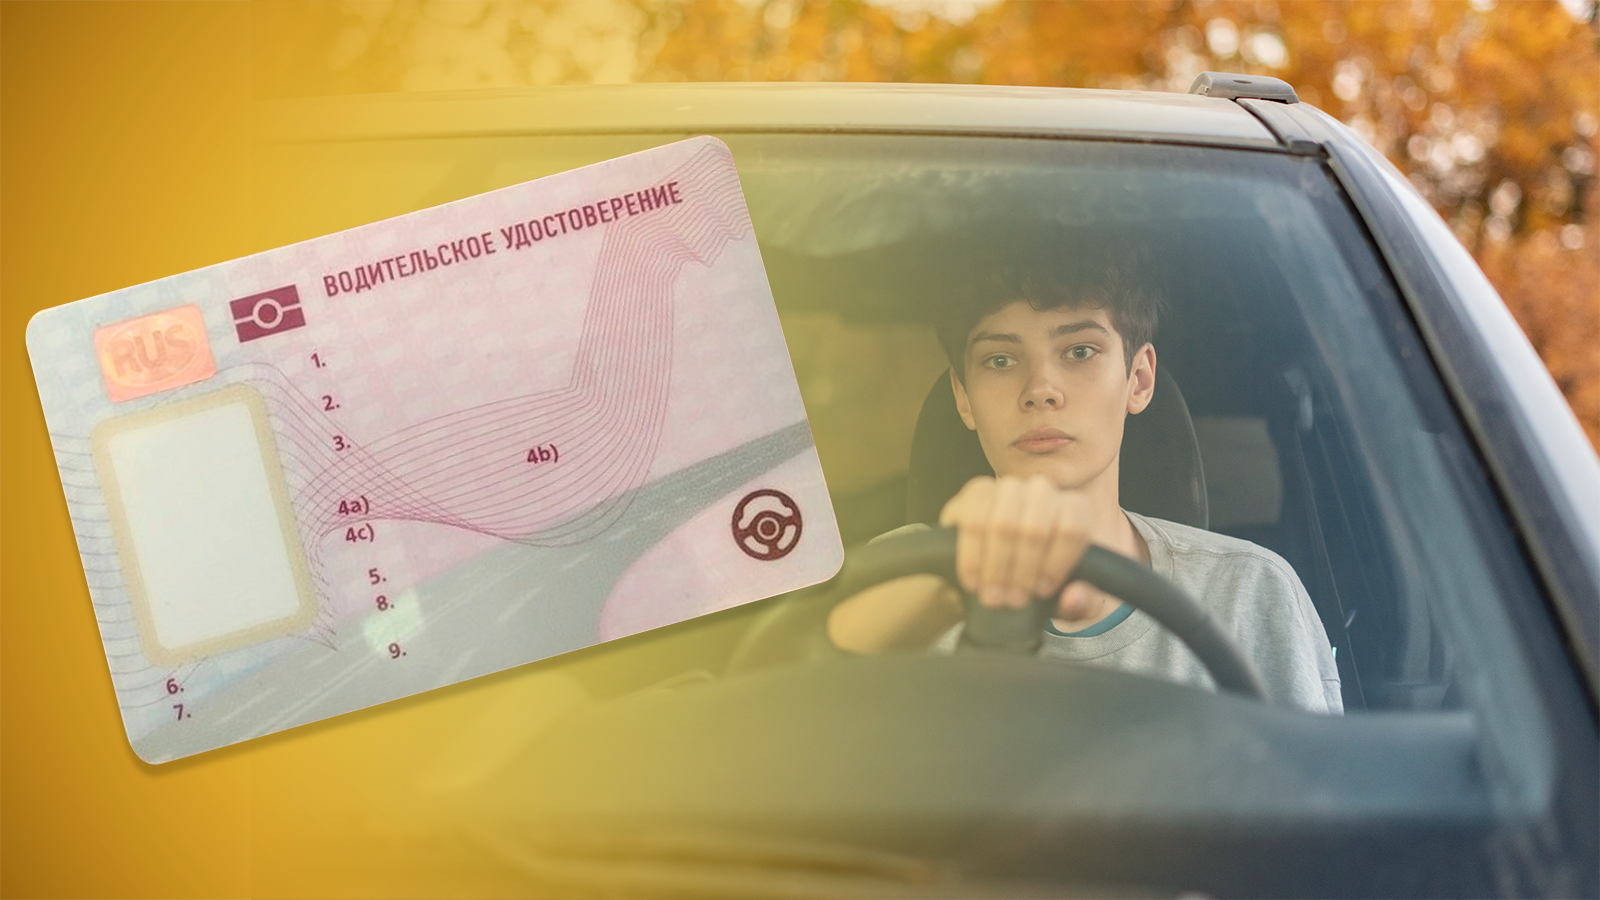 Право на вождение автомобиля возраст. Картинки водительских прав. Фото с водительскими правами.